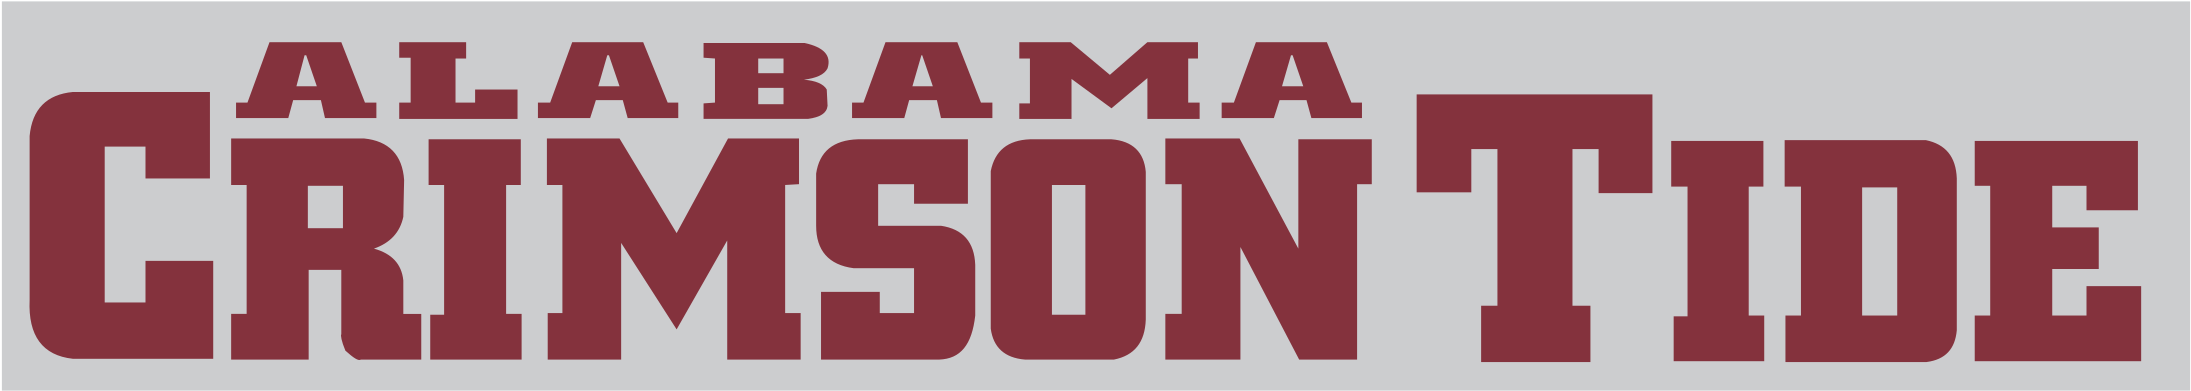 Alabama Crimson Tide Logo Png Transparent - Alabama Crimson Tide Football (2400x2400), Png Download